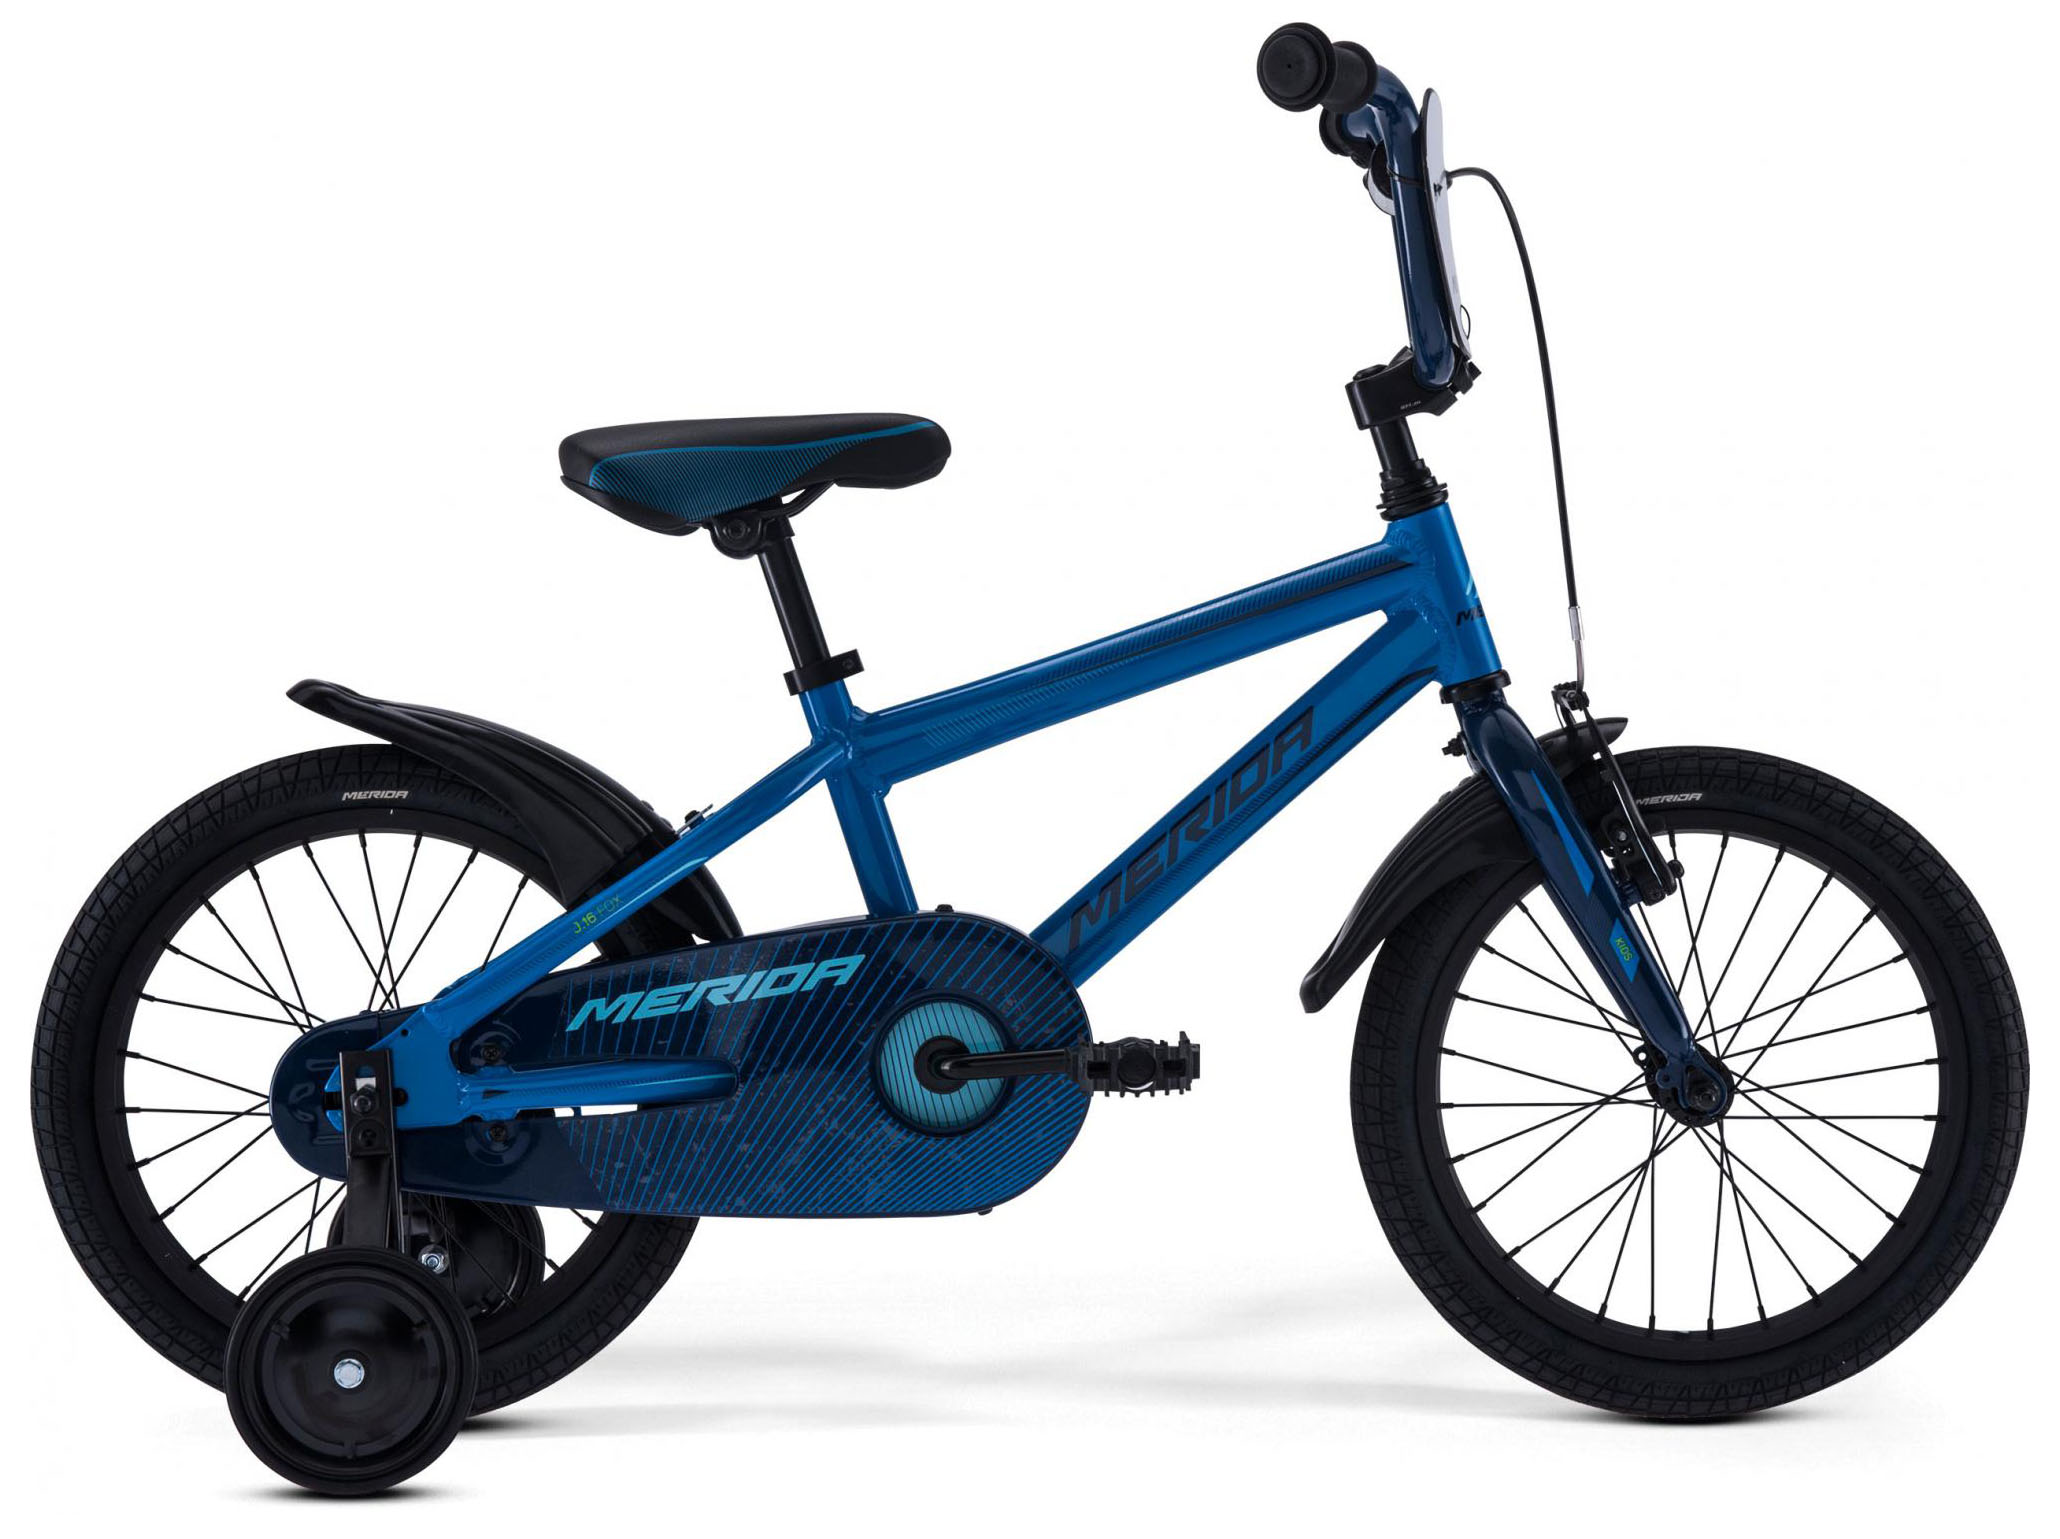  Отзывы о Детском велосипеде Merida Fox J16 2019